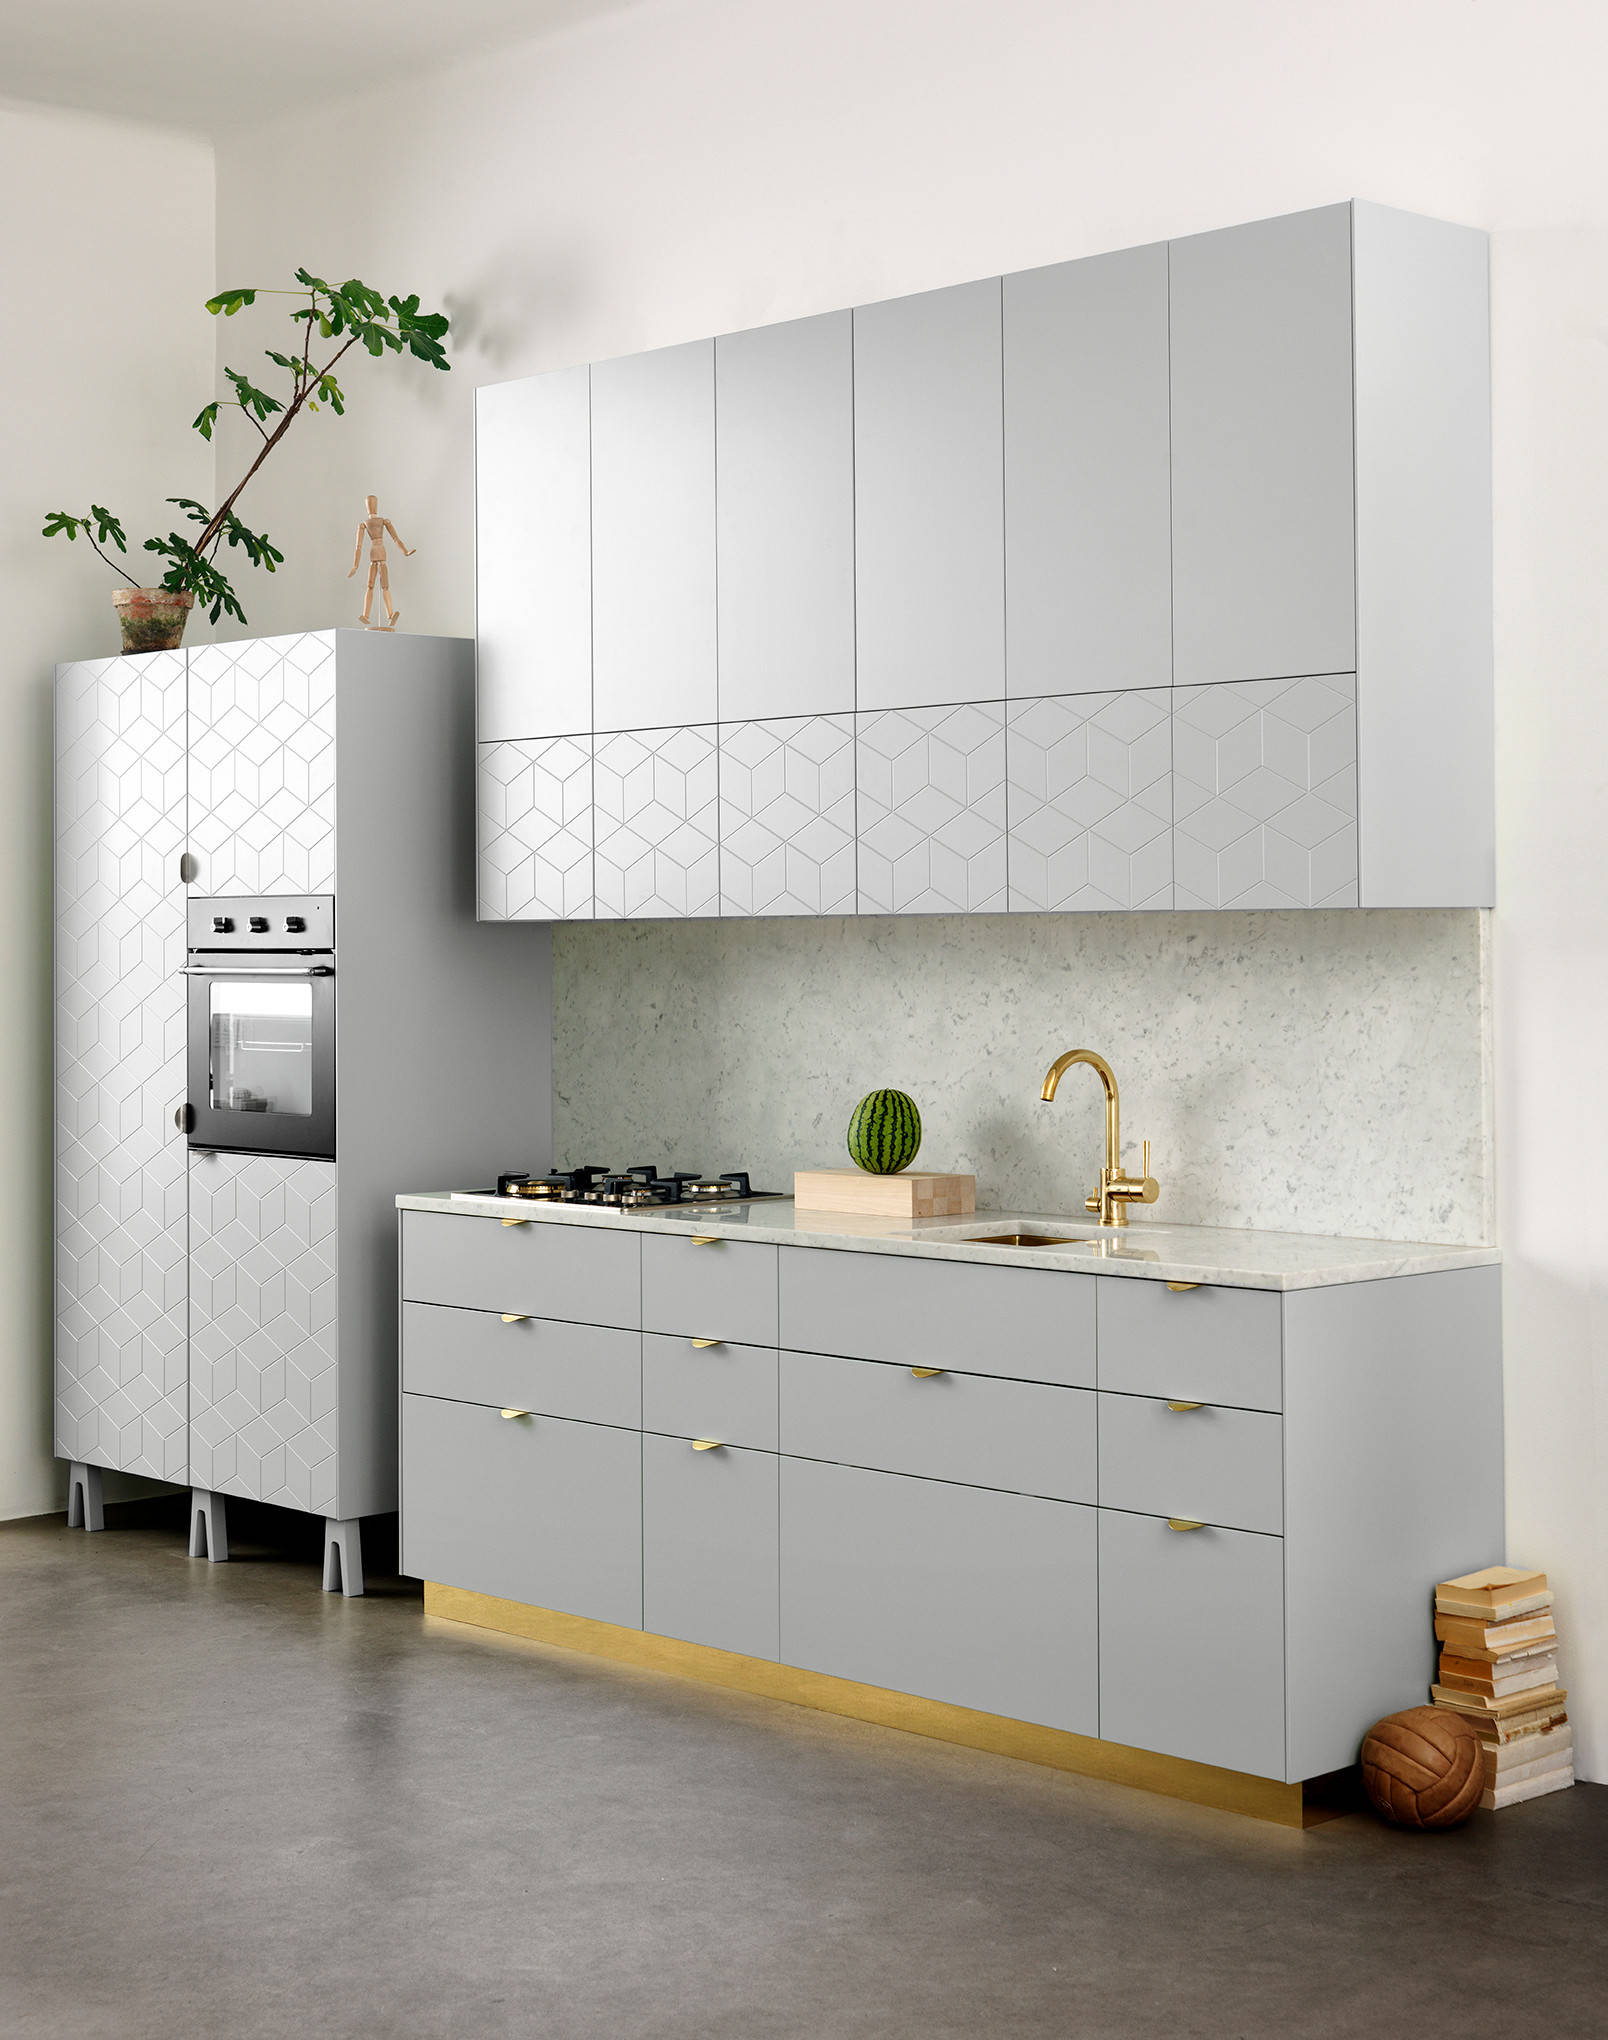 Ikea-Küchenfronten: Ideen, wie Sie diese pimpen können